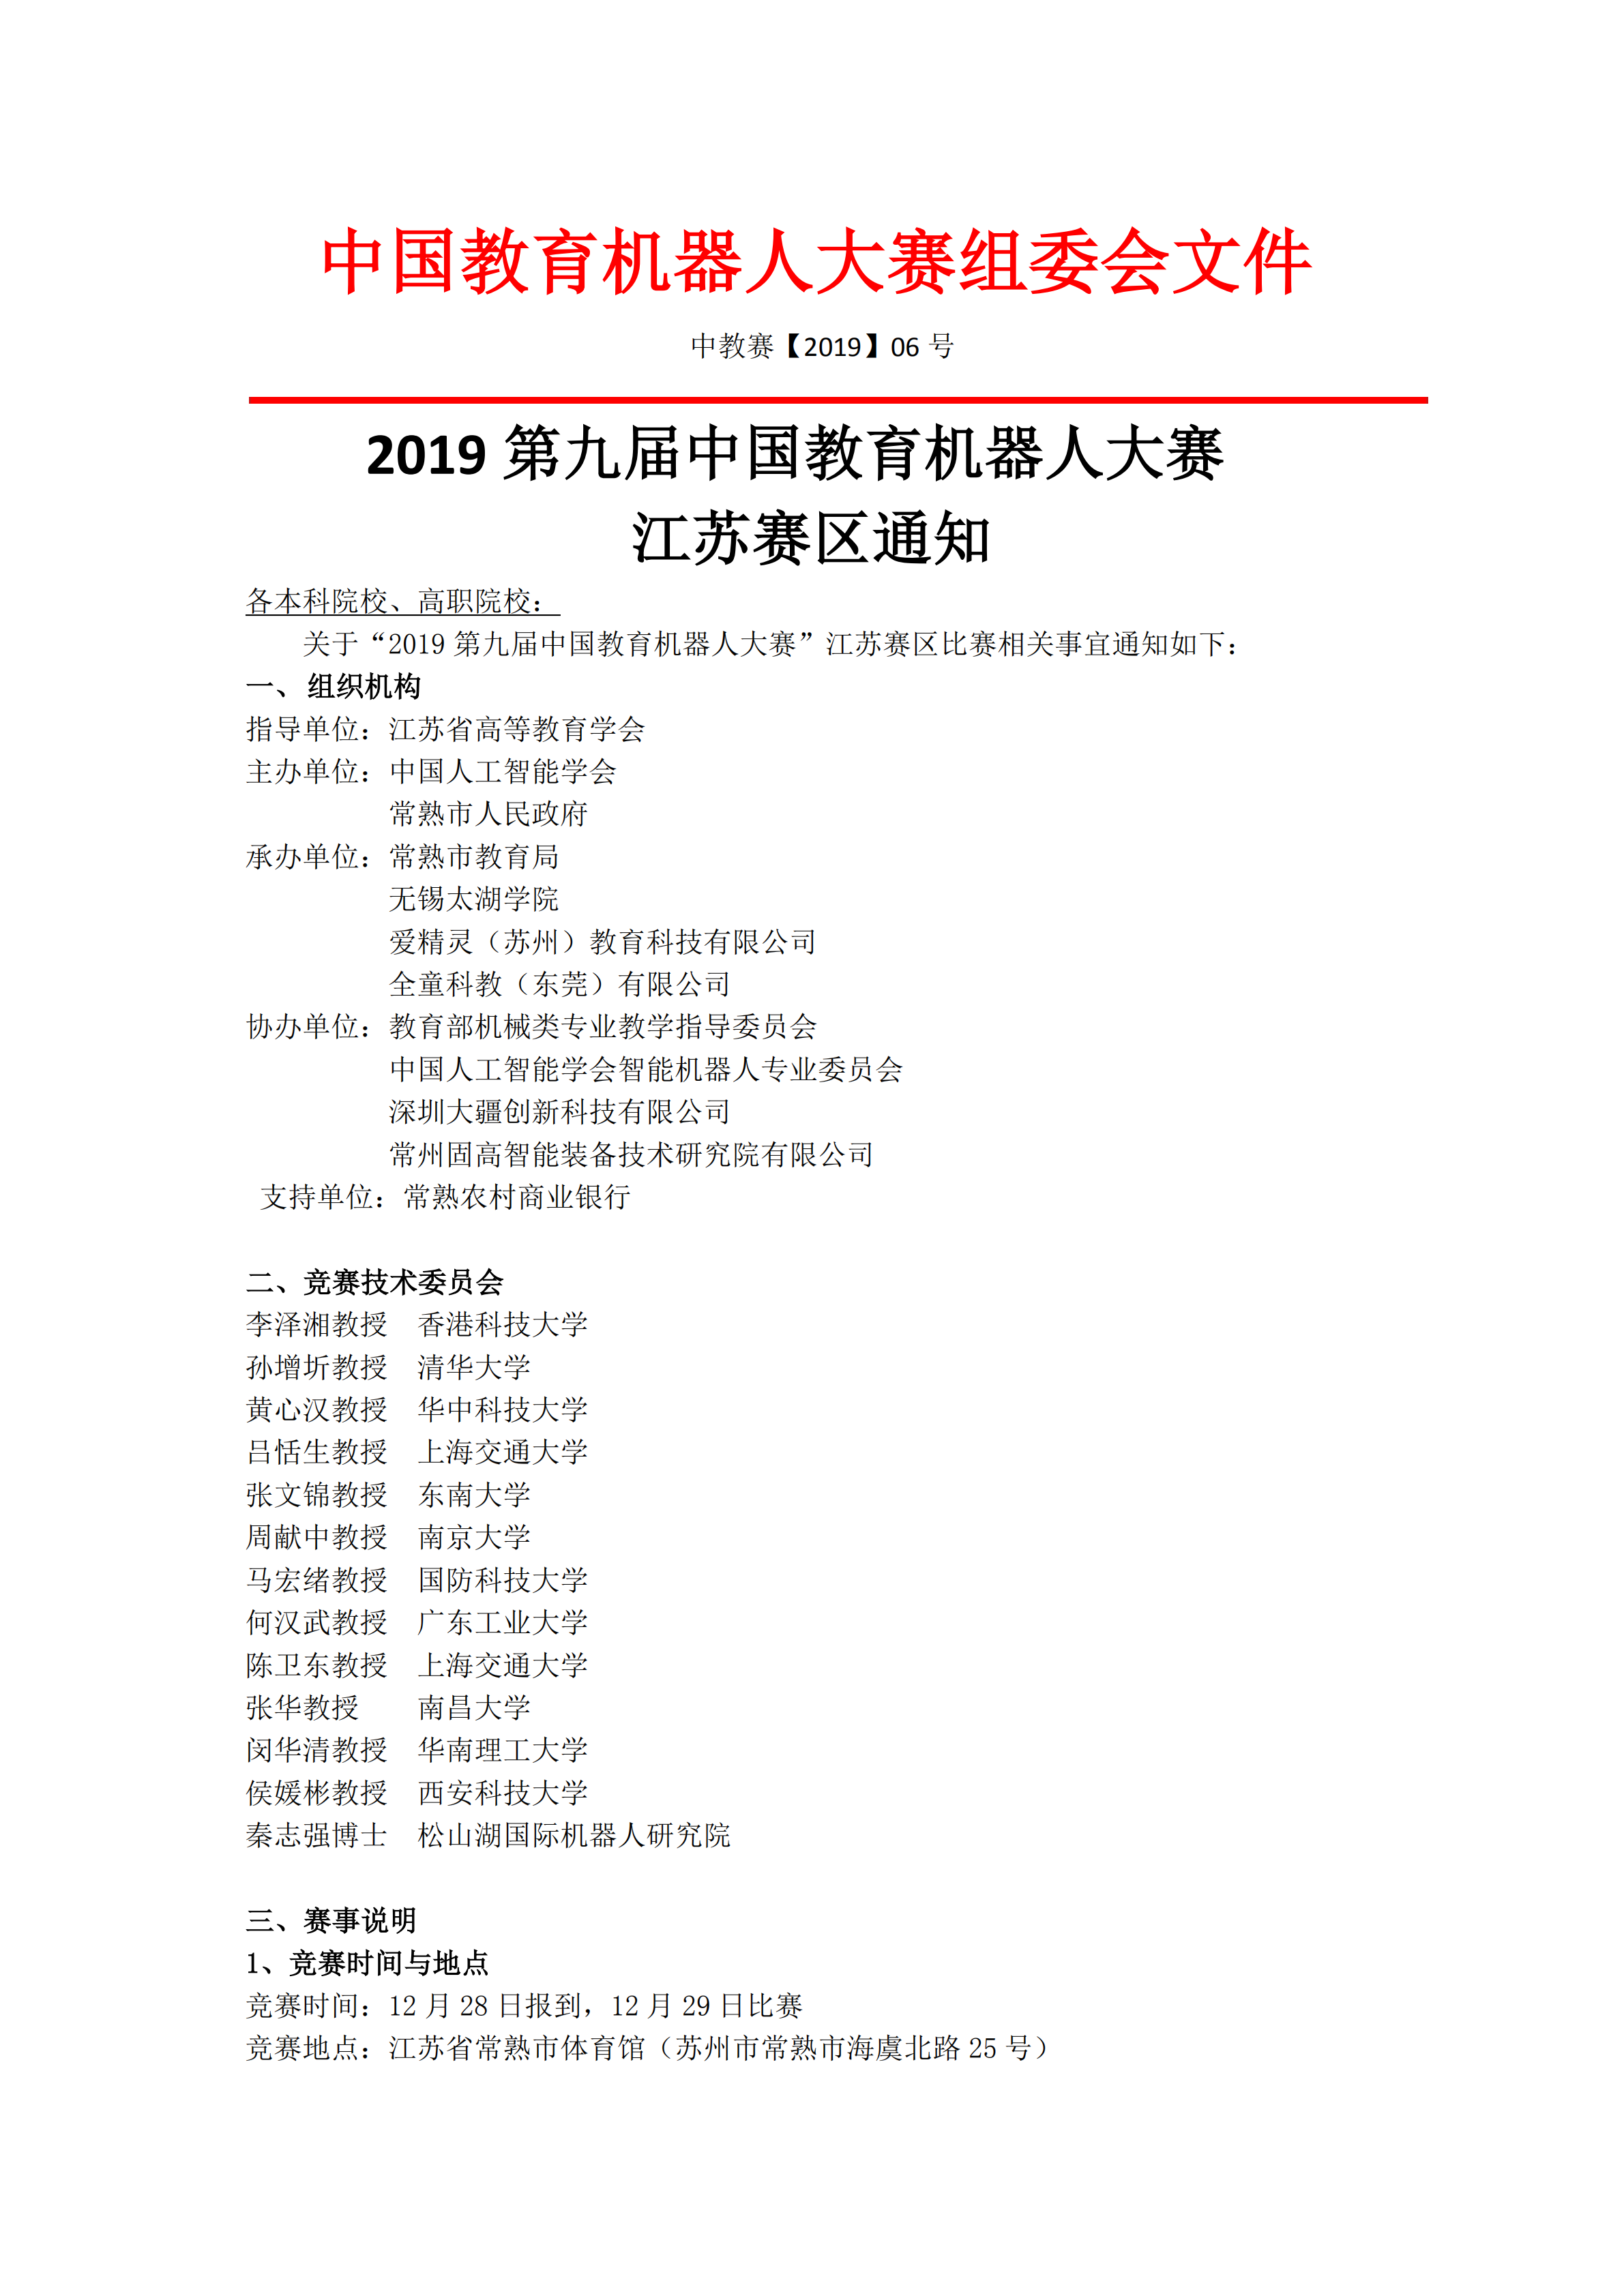 2019第九届中国教育机器人大赛江苏赛区通知（1.0版）_00.png